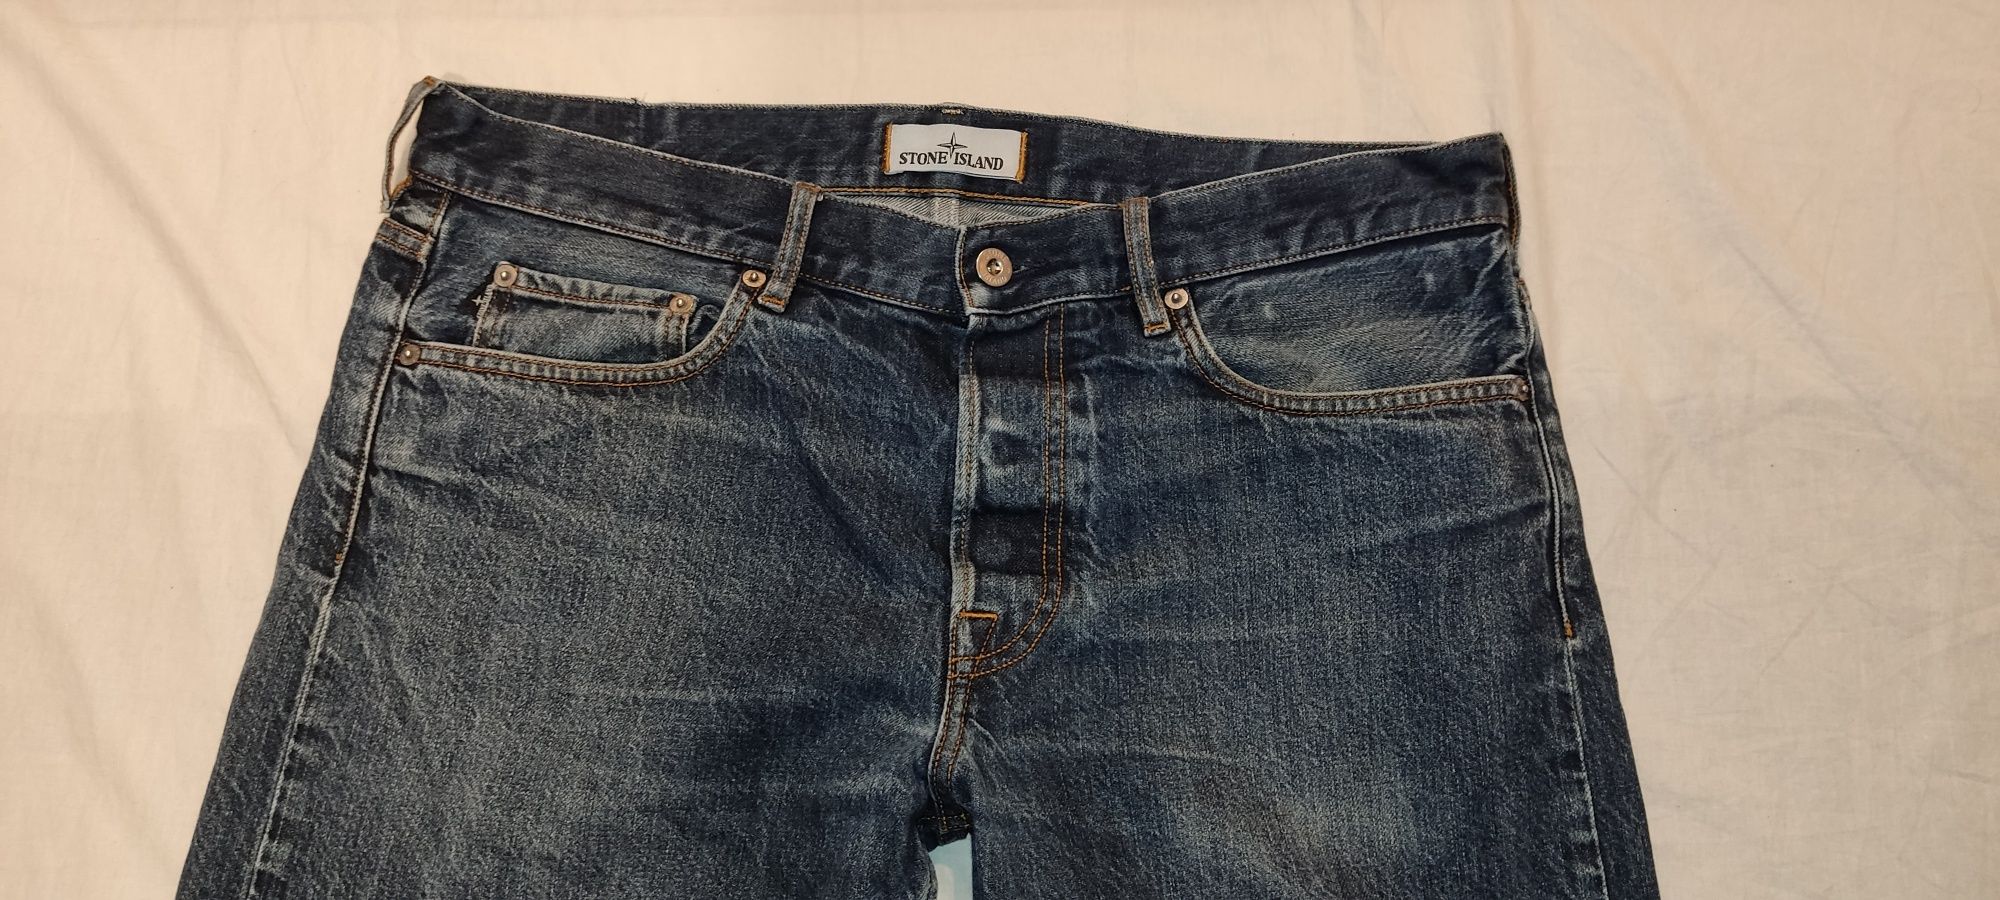 Blugi jeans Stone Island W34/L34 Tipe:RE-T regular fit pantaloni